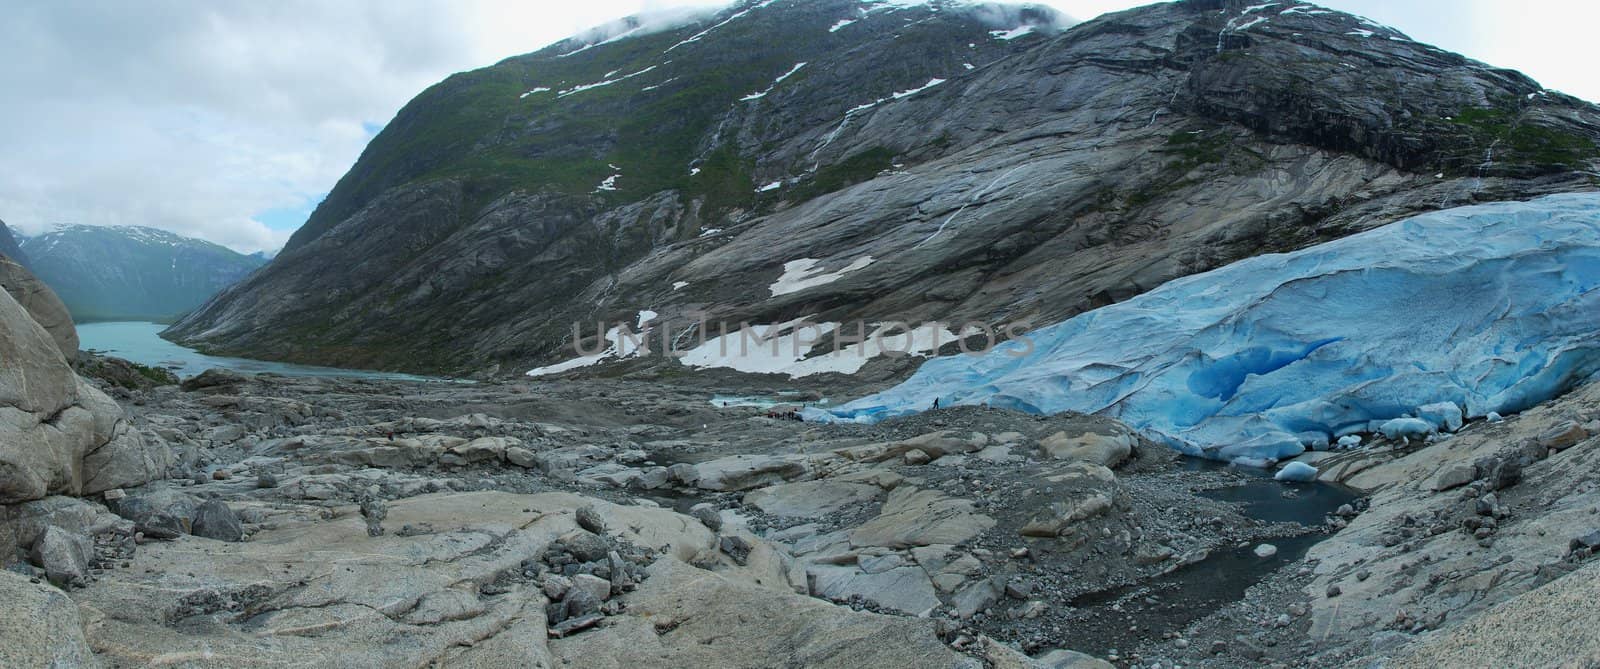 Jostedal Glacier, Norway. by teus